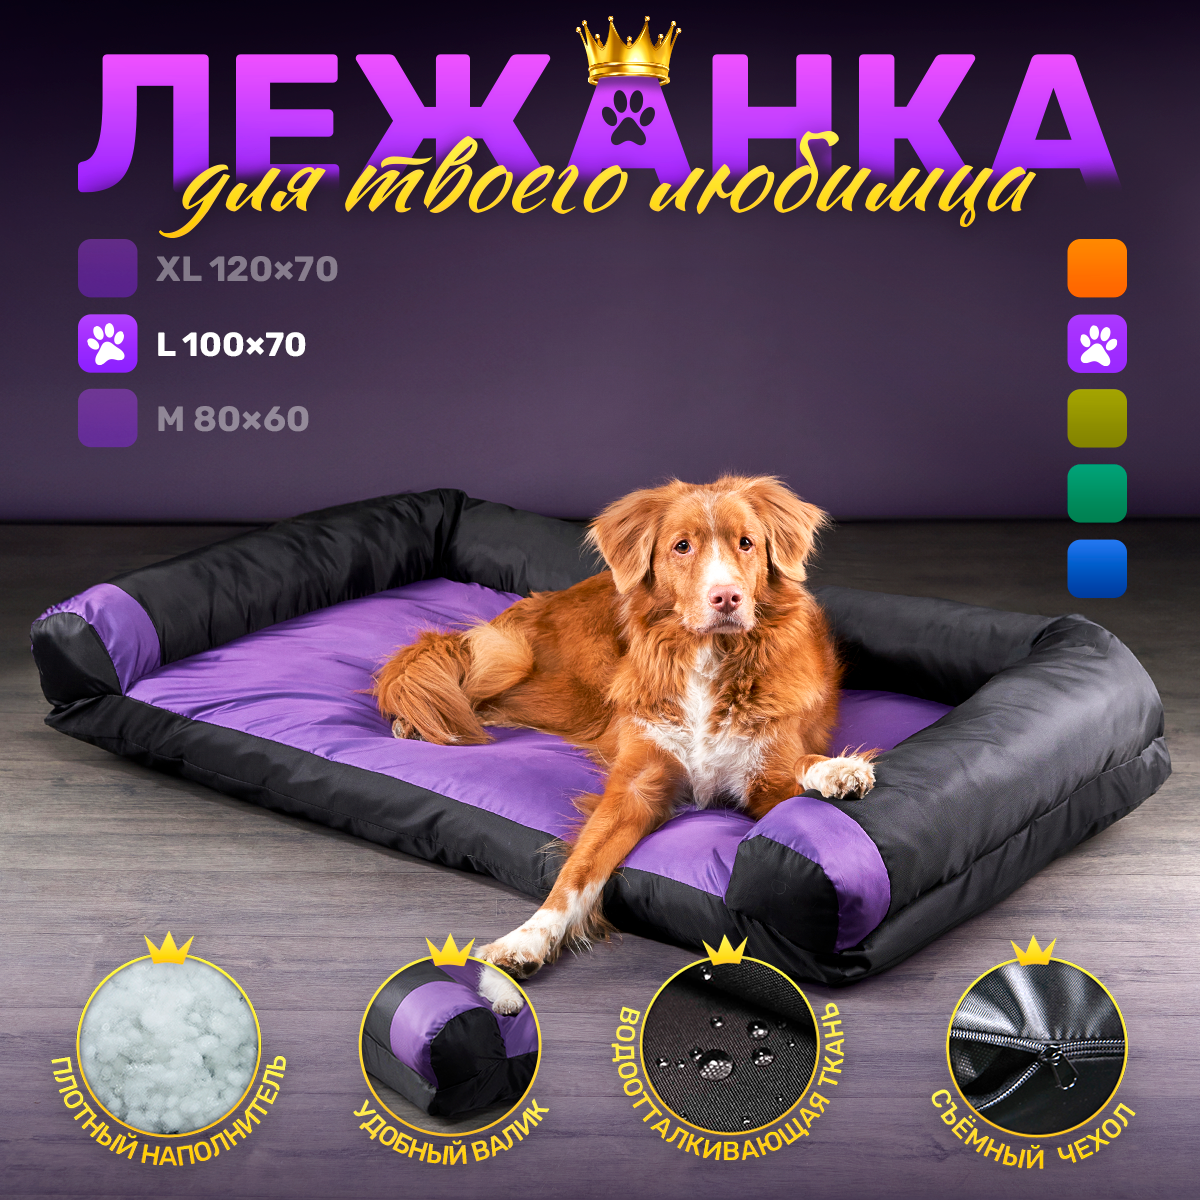 Диван-лежак антивандальный для собак средних и крупных пород 100*70см Рurple / black